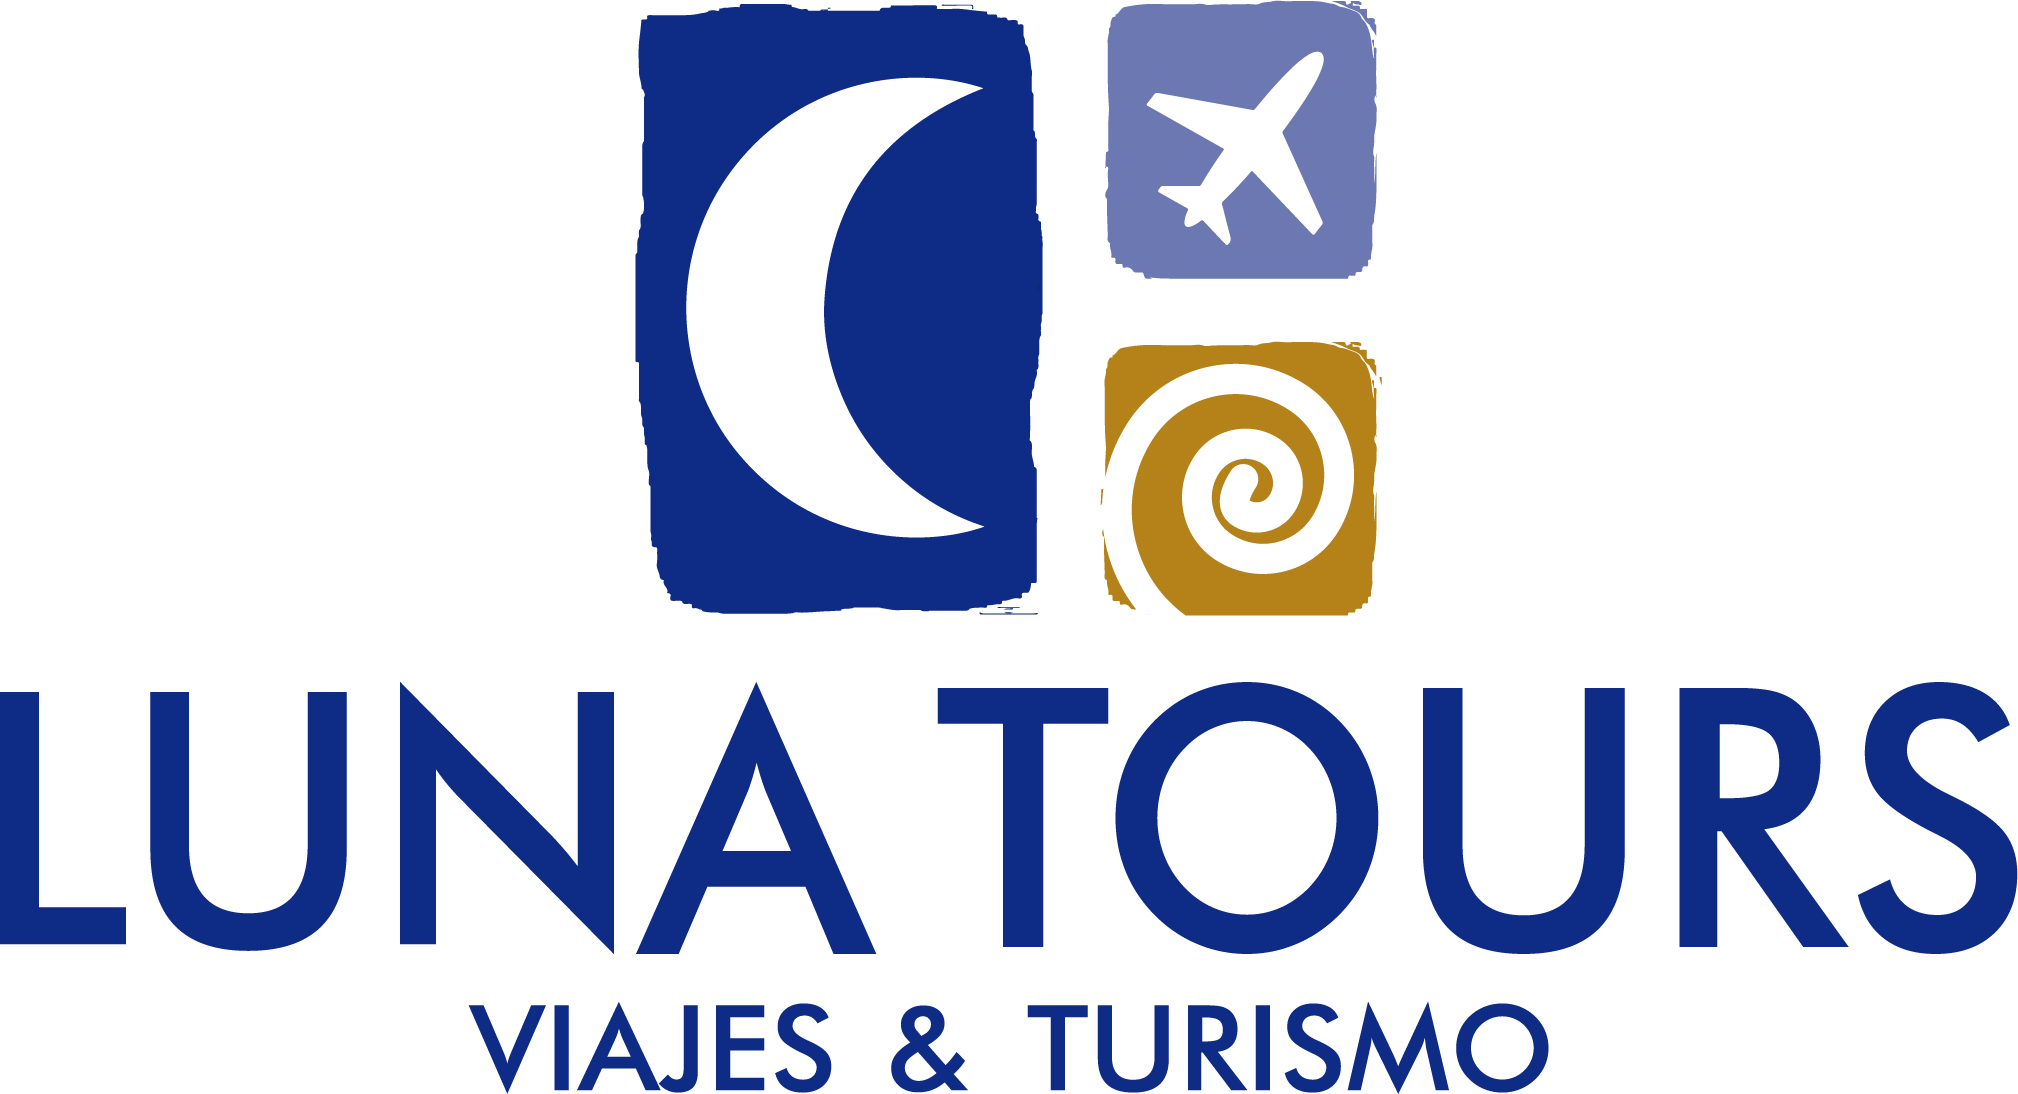 Lunatours Tiquetes baratos a cualquier destino. Reserva y compra tiquetes aéreos, cuartos de hoteles, autos, cruceros y paquetes turísticos en línea